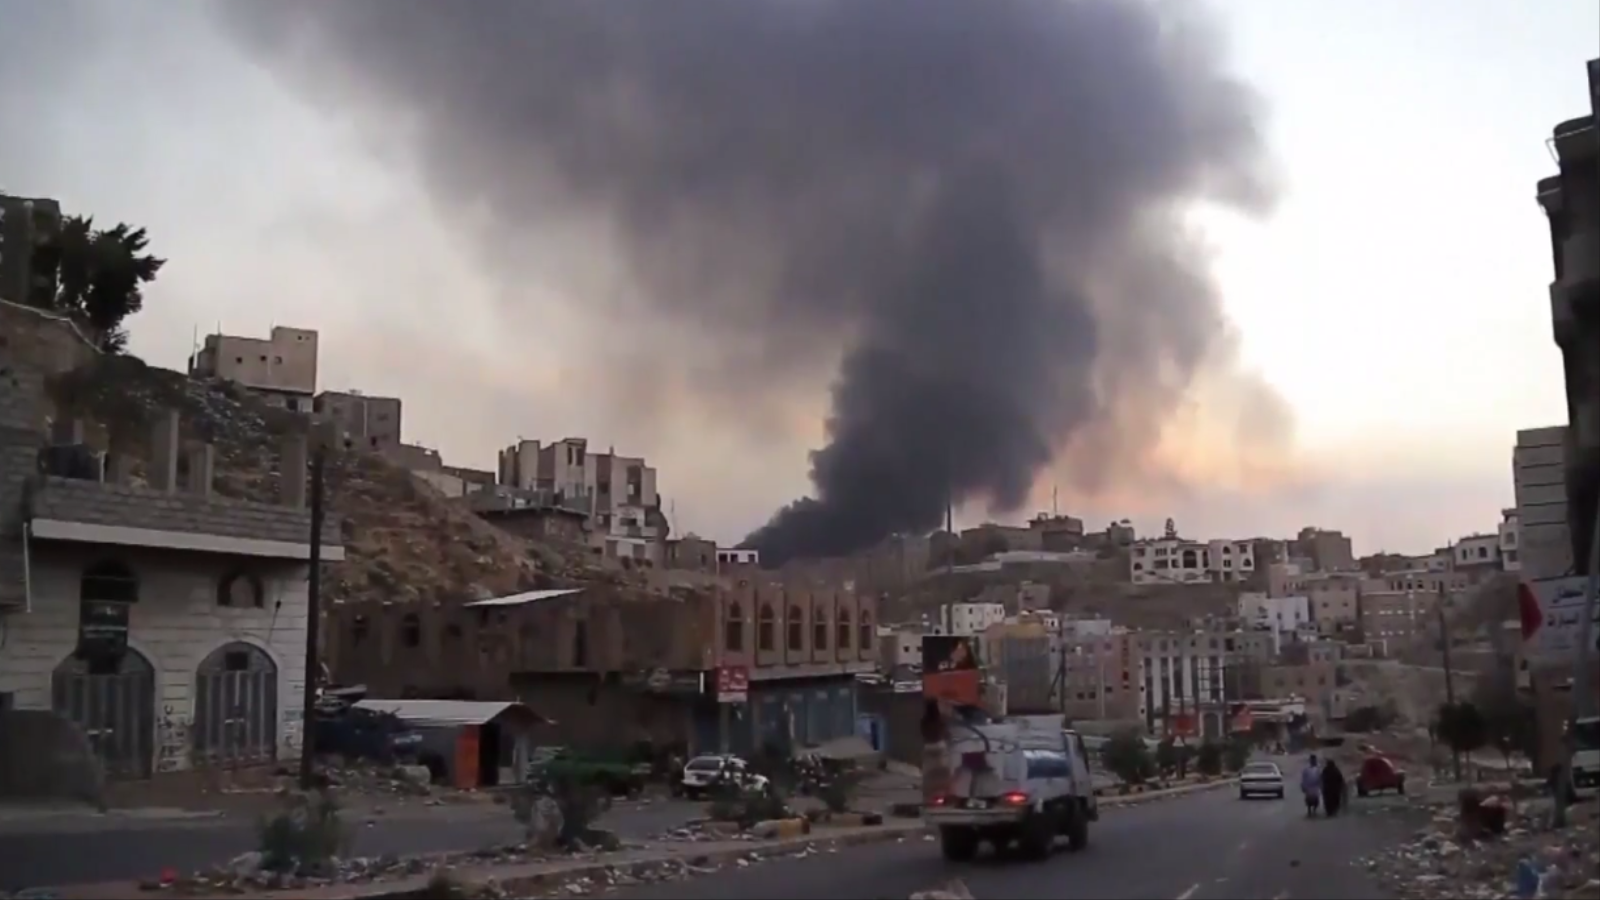 يتعمد التحالف تدمير اليمن بغرض تركيع اليمن وتركه في الشباك الخليجية الاقتصادية، فحتى في حال وجود تسوية ما مع جماعة الحوثي، فإن 